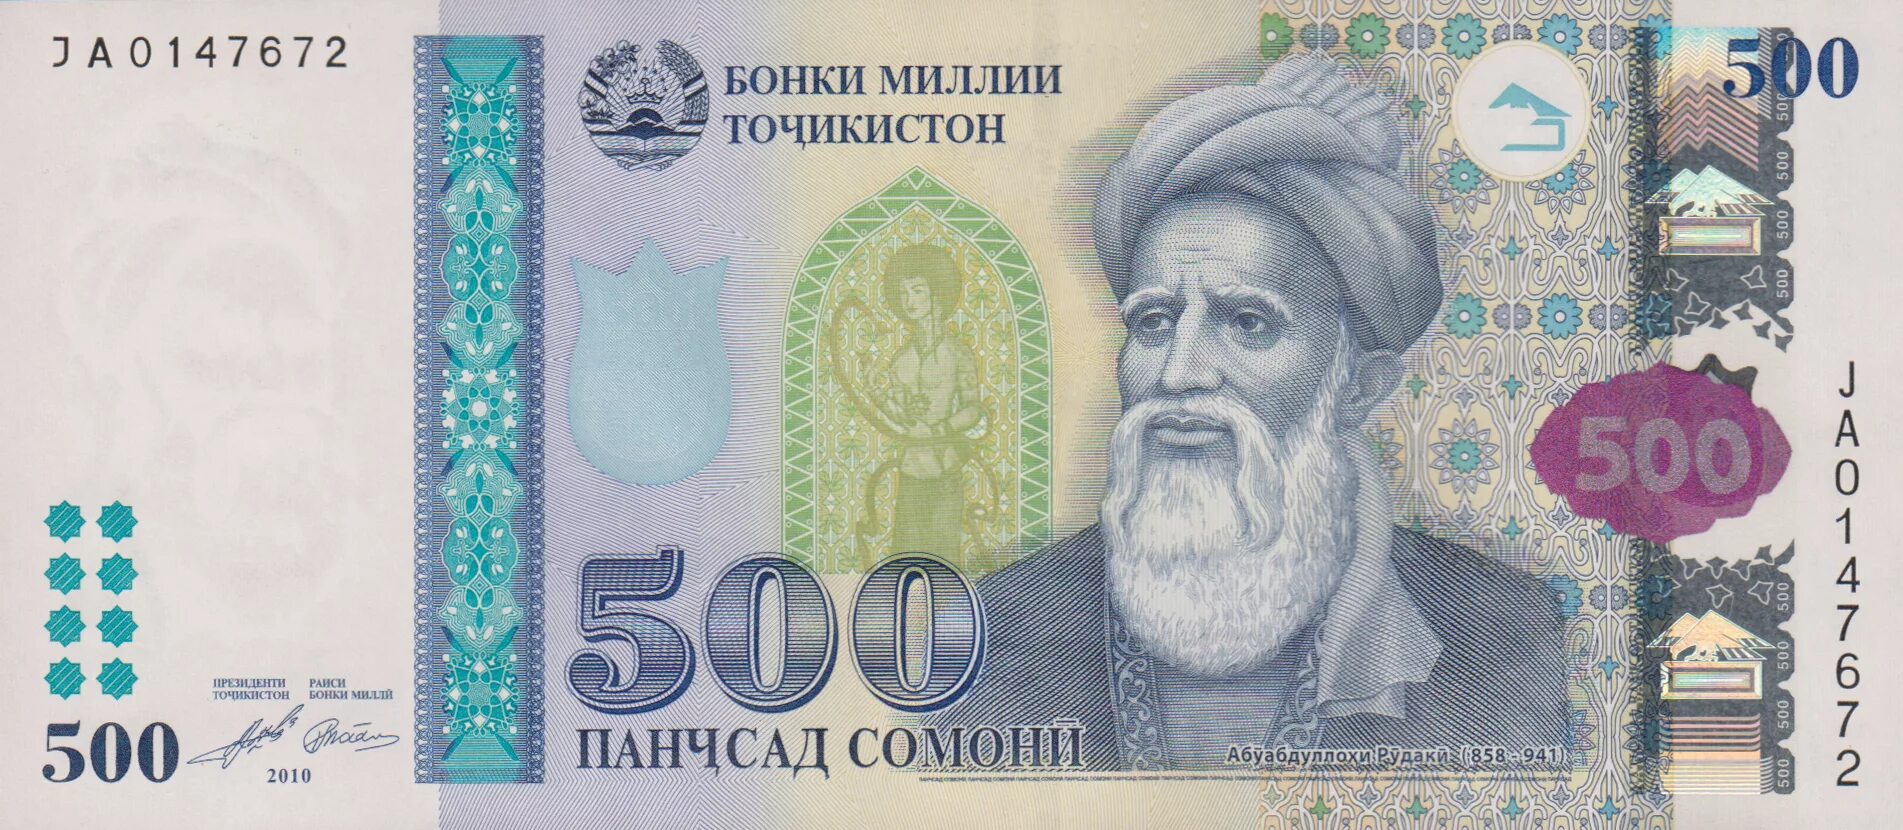 Tenge uzb. Купюра Таджикистана 500 Сомони. Деньги Таджикистана 500 Сомони. Купюры Сомони 500 Сомони. Пули точики 500 сомона.